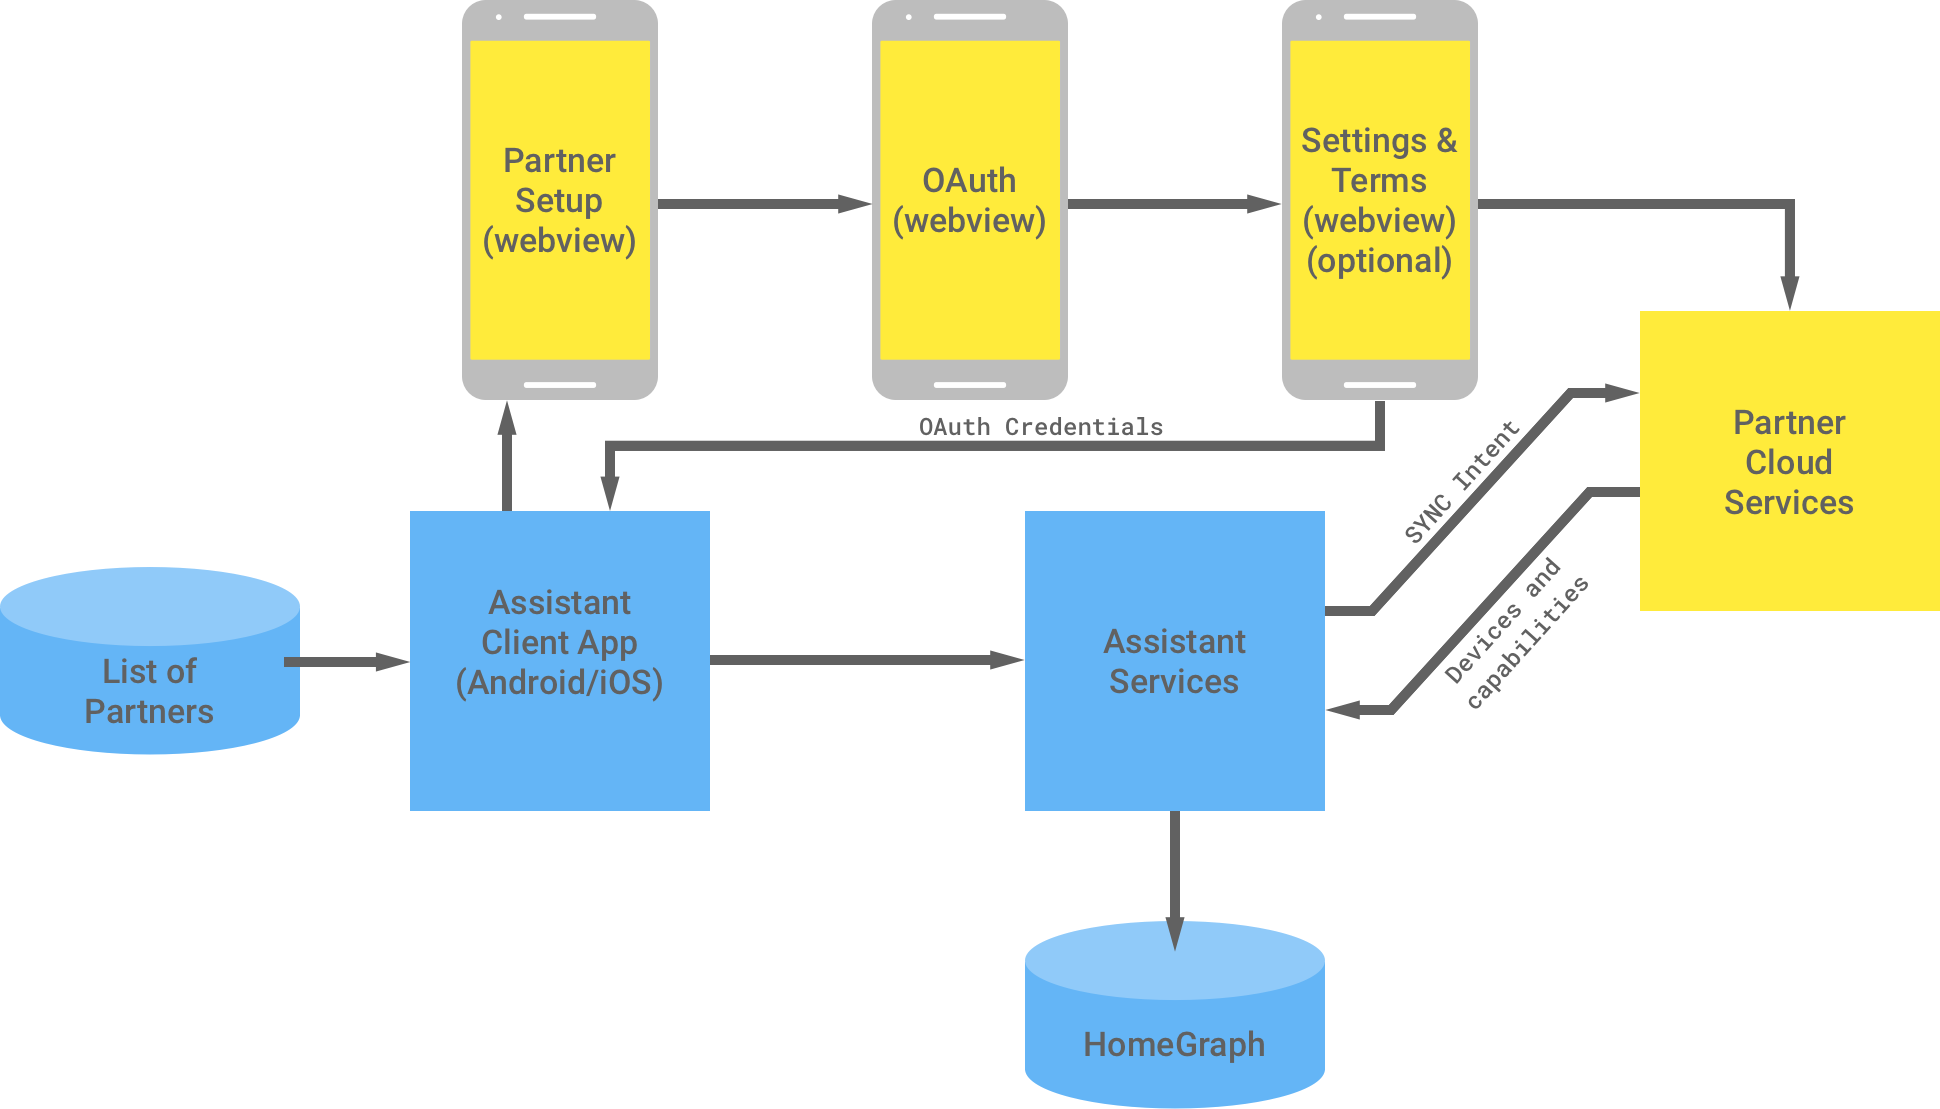 下图显示了 Google 基础架构与合作伙伴基础架构之间的互动。Google 基础架构中有一个可供 Google 助理客户端应用使用的合作伙伴列表，该列表随后会流向合作伙伴基础架构以完成 OAuth 身份验证。合作伙伴端的 OAuth 身份验证包括合作伙伴设置 WebView、OAuth WebView、可选设置和条款，以及合作伙伴云服务。然后，合作伙伴基础架构会将 OAuth 凭据返回给 Google 助理客户端应用。合作伙伴云服务会向 Google 助理服务发送可用的设备和功能，然后这类服务会在 Home Graph 中存储这些信息。